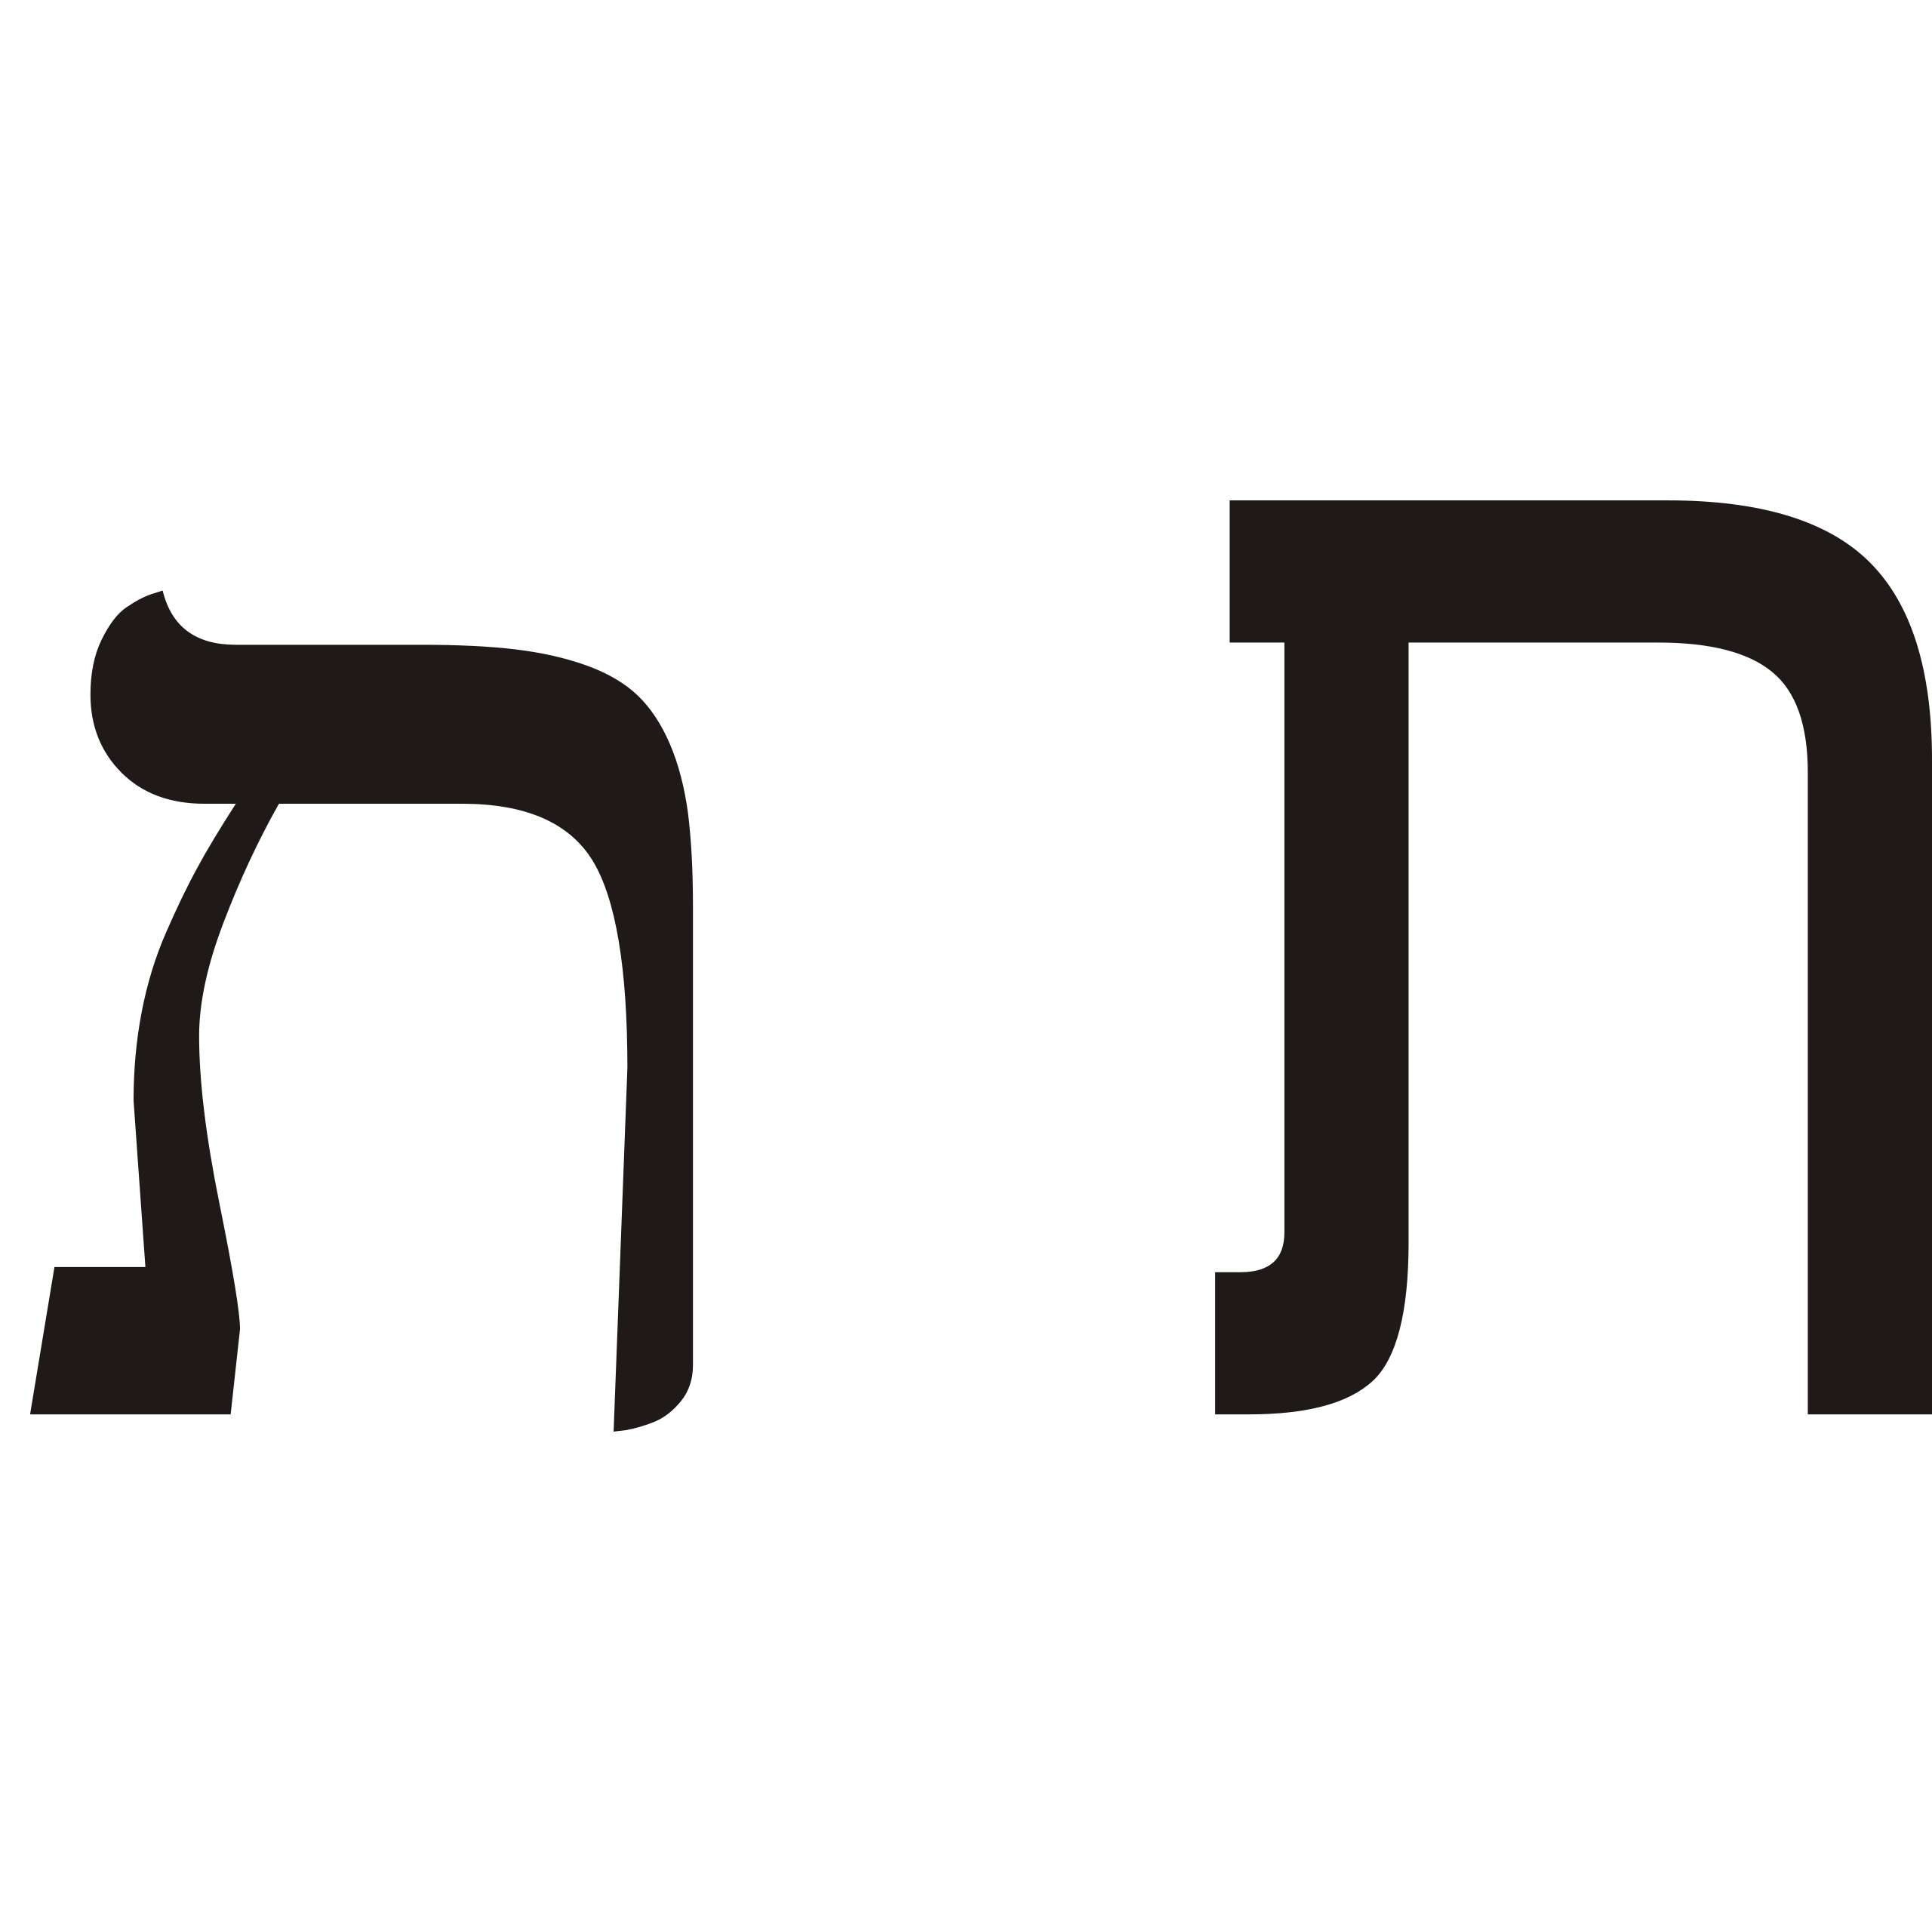 Unique tav. Буква тав еврейского алфавита. Буква Тау еврейского алфавита. Буква Тау иврит. Буква тав в иврите.